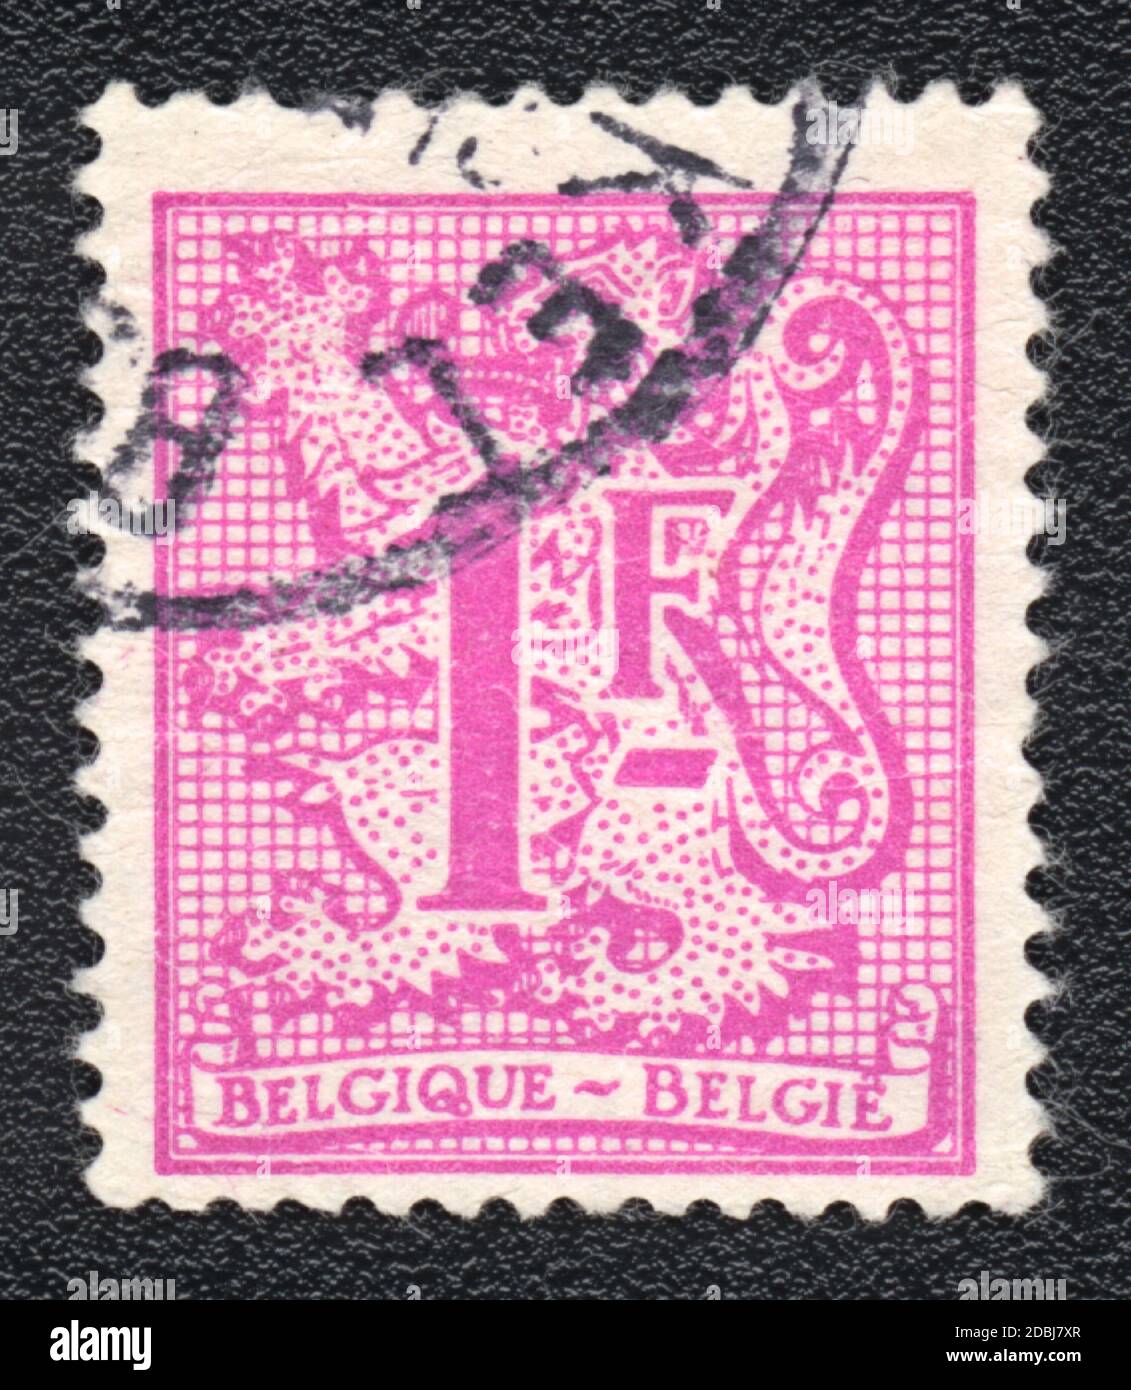 Eine in Belgien gedruckte Briefmarke zeigt einen Wappentier und Wert 1F in  rosa Farbe, um 1968 Stockfotografie - Alamy